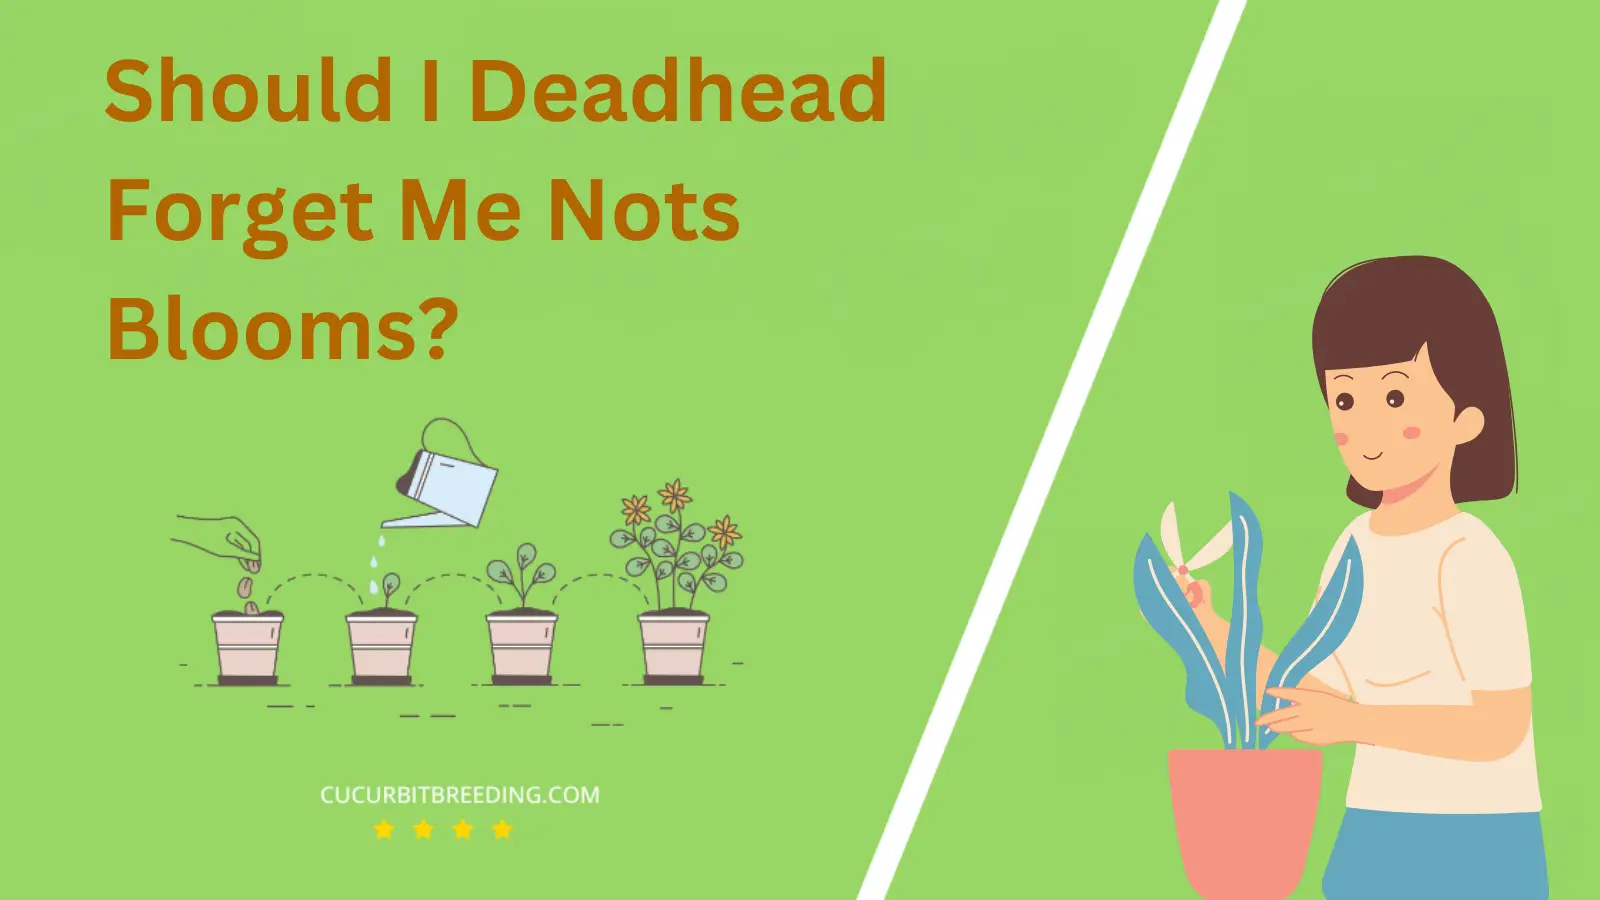 Should I Deadhead Forget Me Nots Blooms?